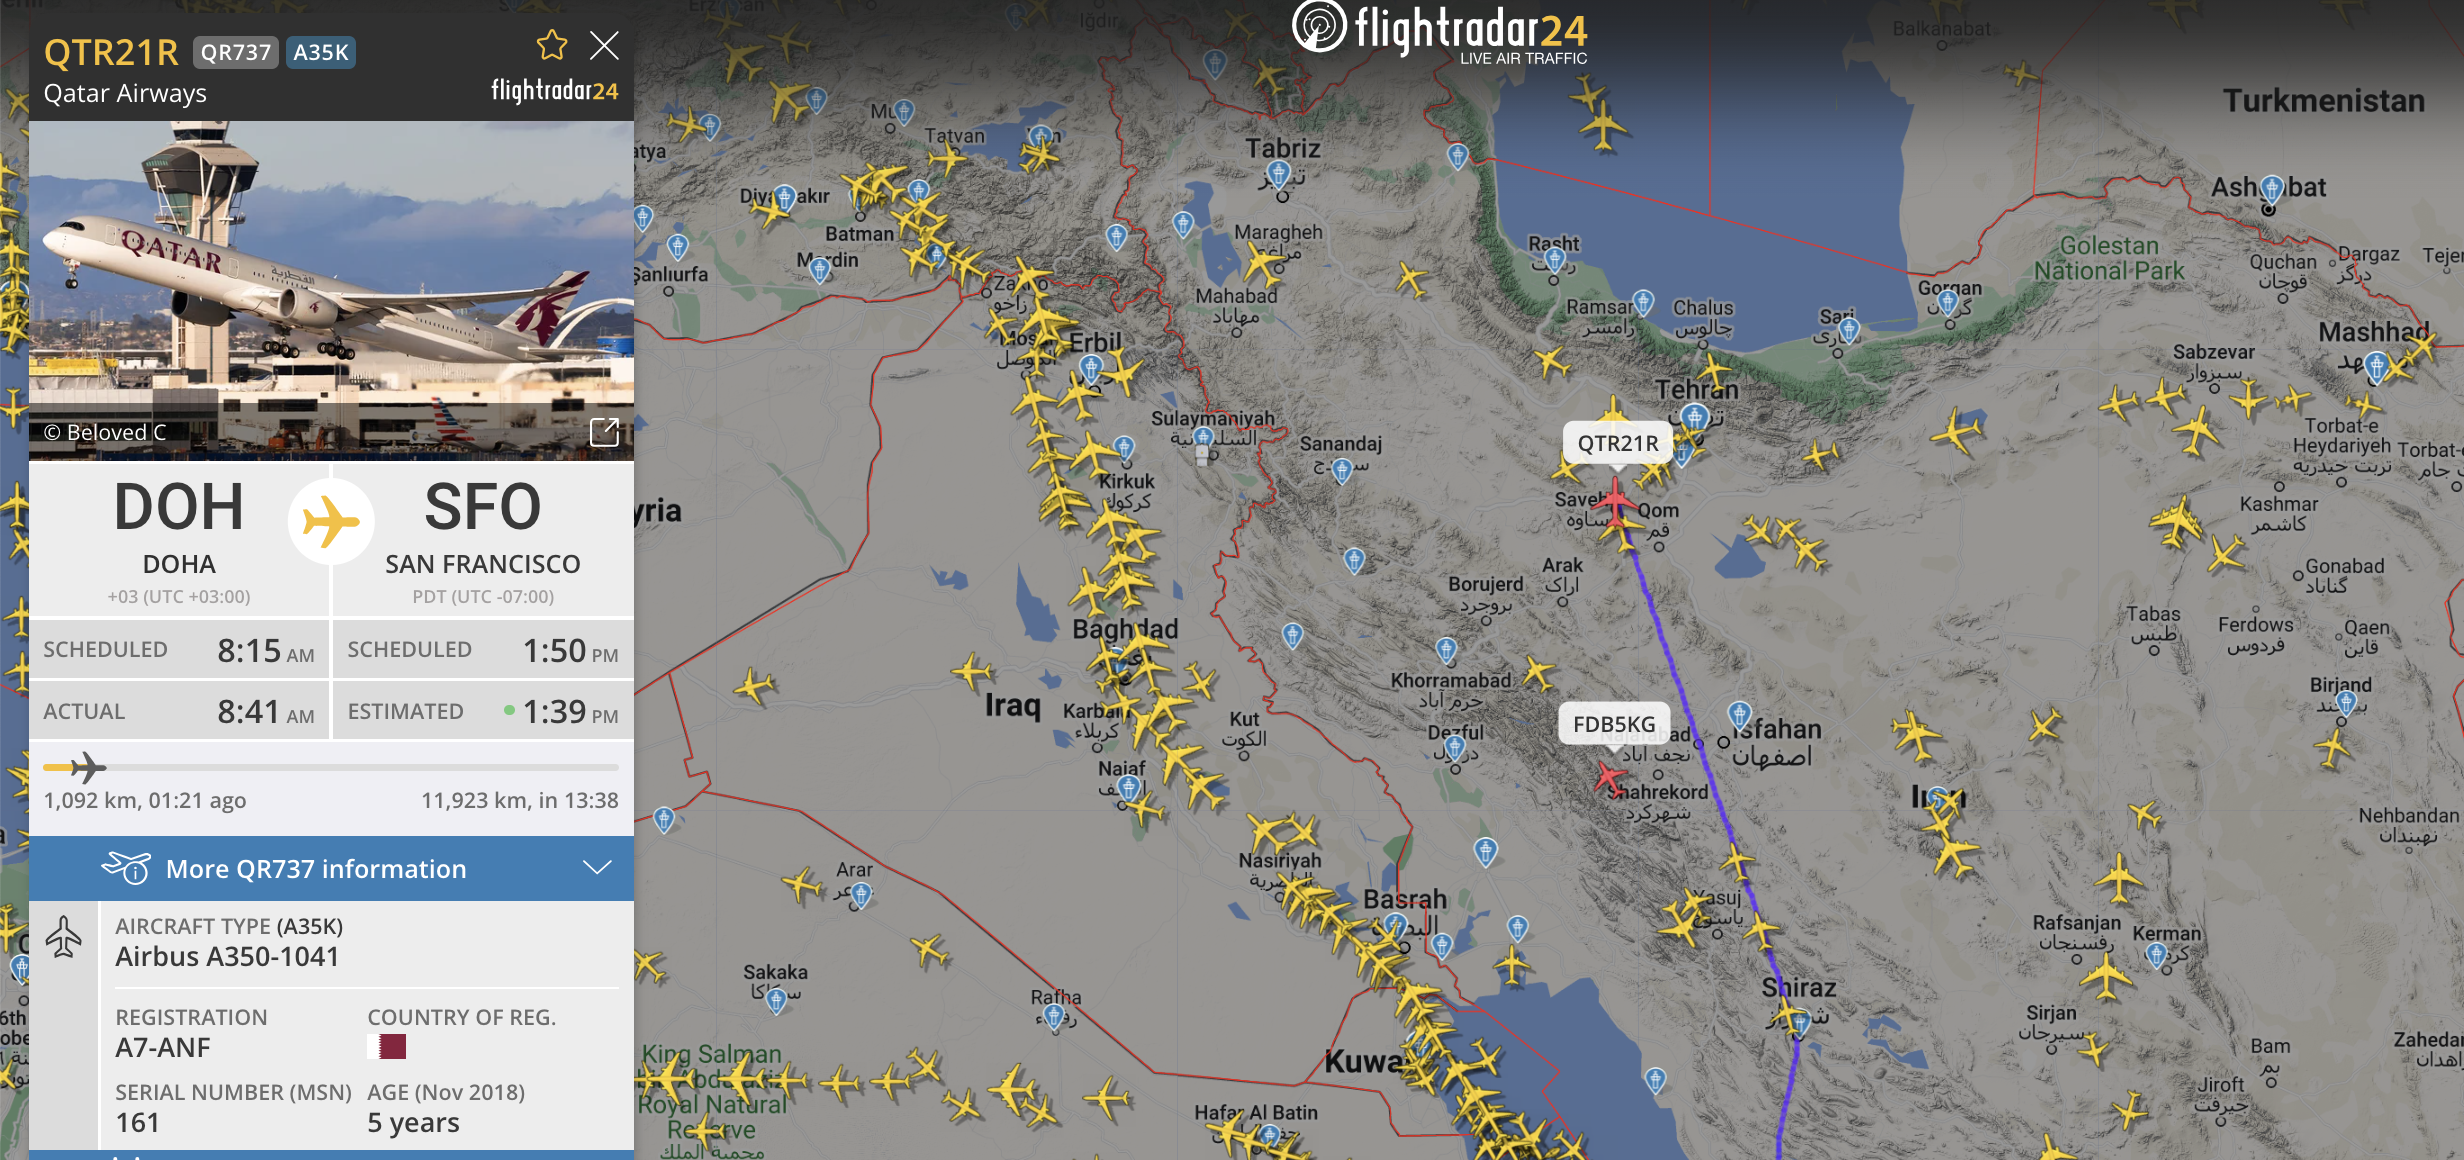 טיסה של קטאר איירווייז דרך המרחב האווירי של איראן